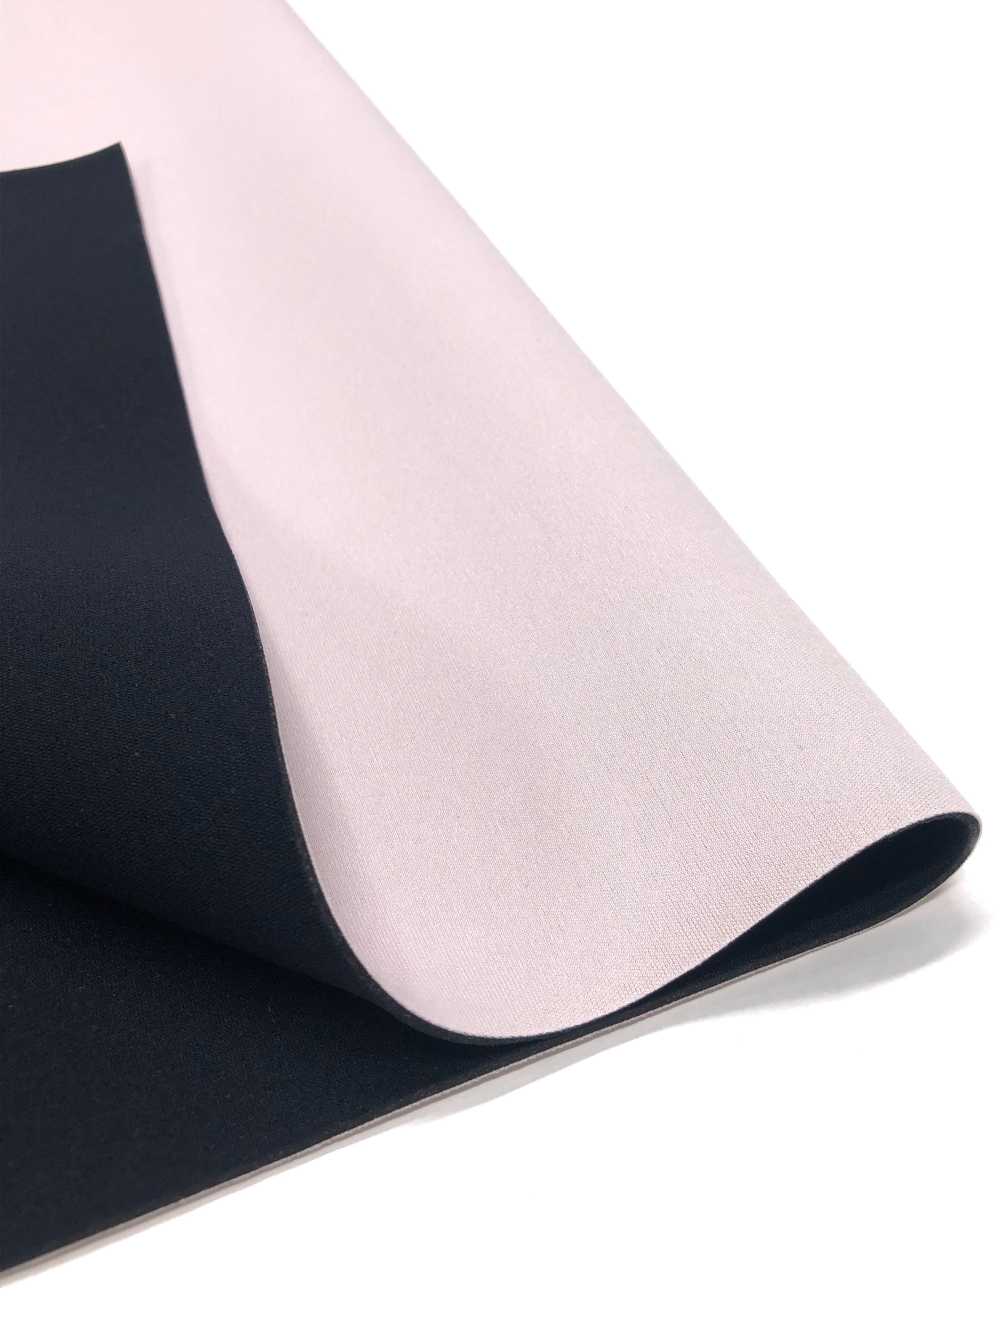 31192 HM ALS Pink/PS Black 95 × 170cm[Textile / Fabric] Tortoise